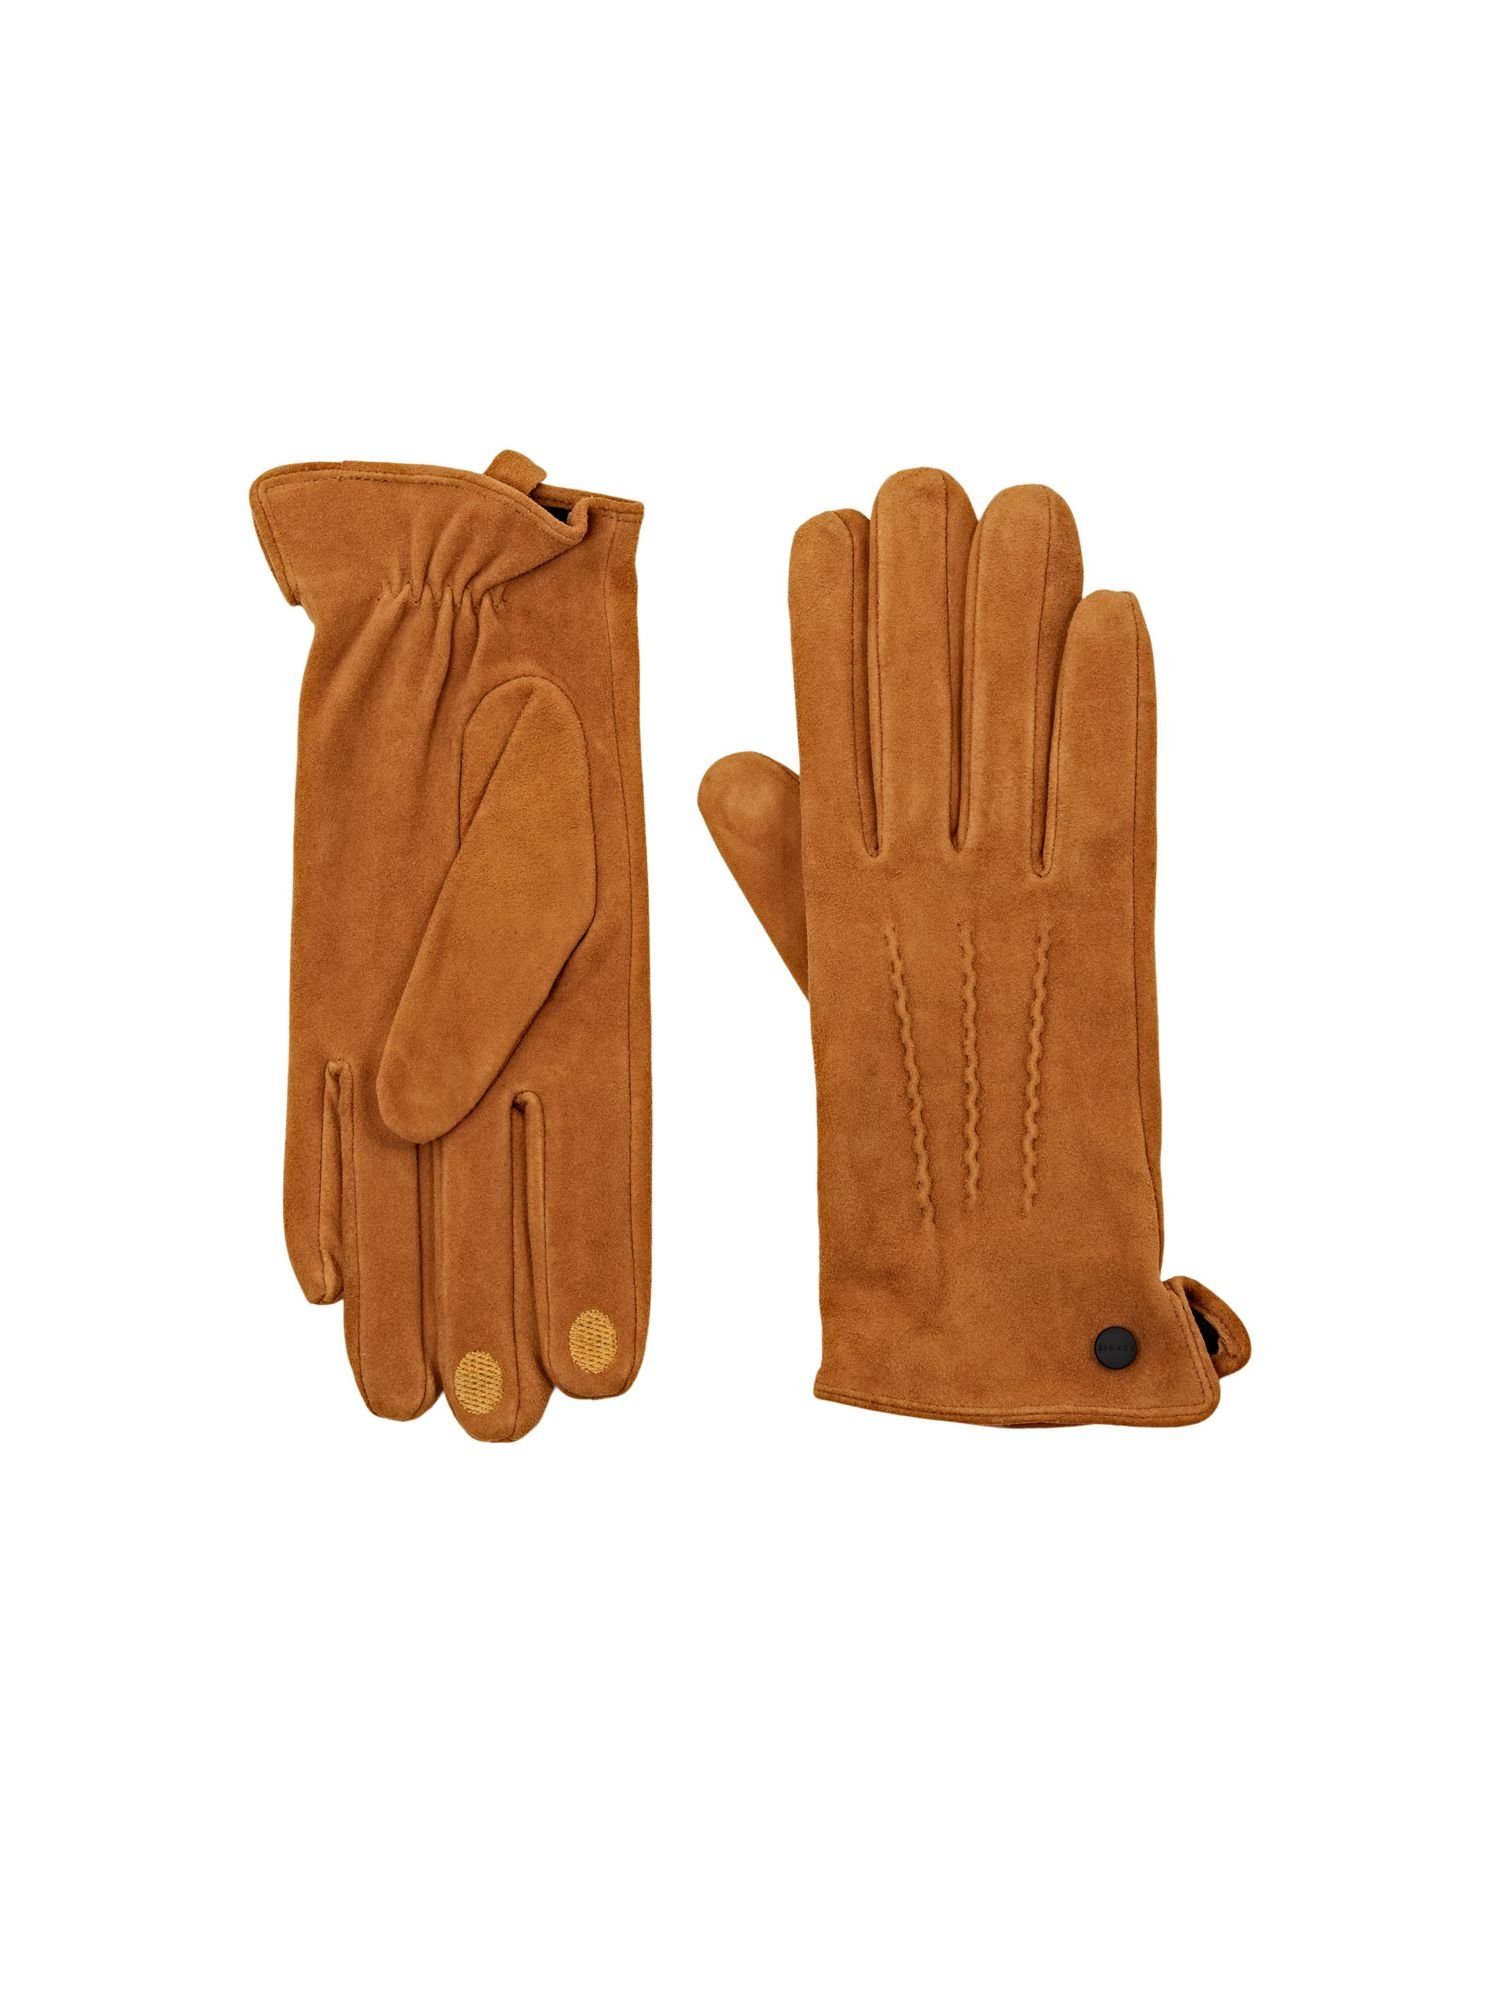 Esprit Lederhandschuhe Rauleder-Handschuhe mit Touchscreen-Funktion CARAMEL